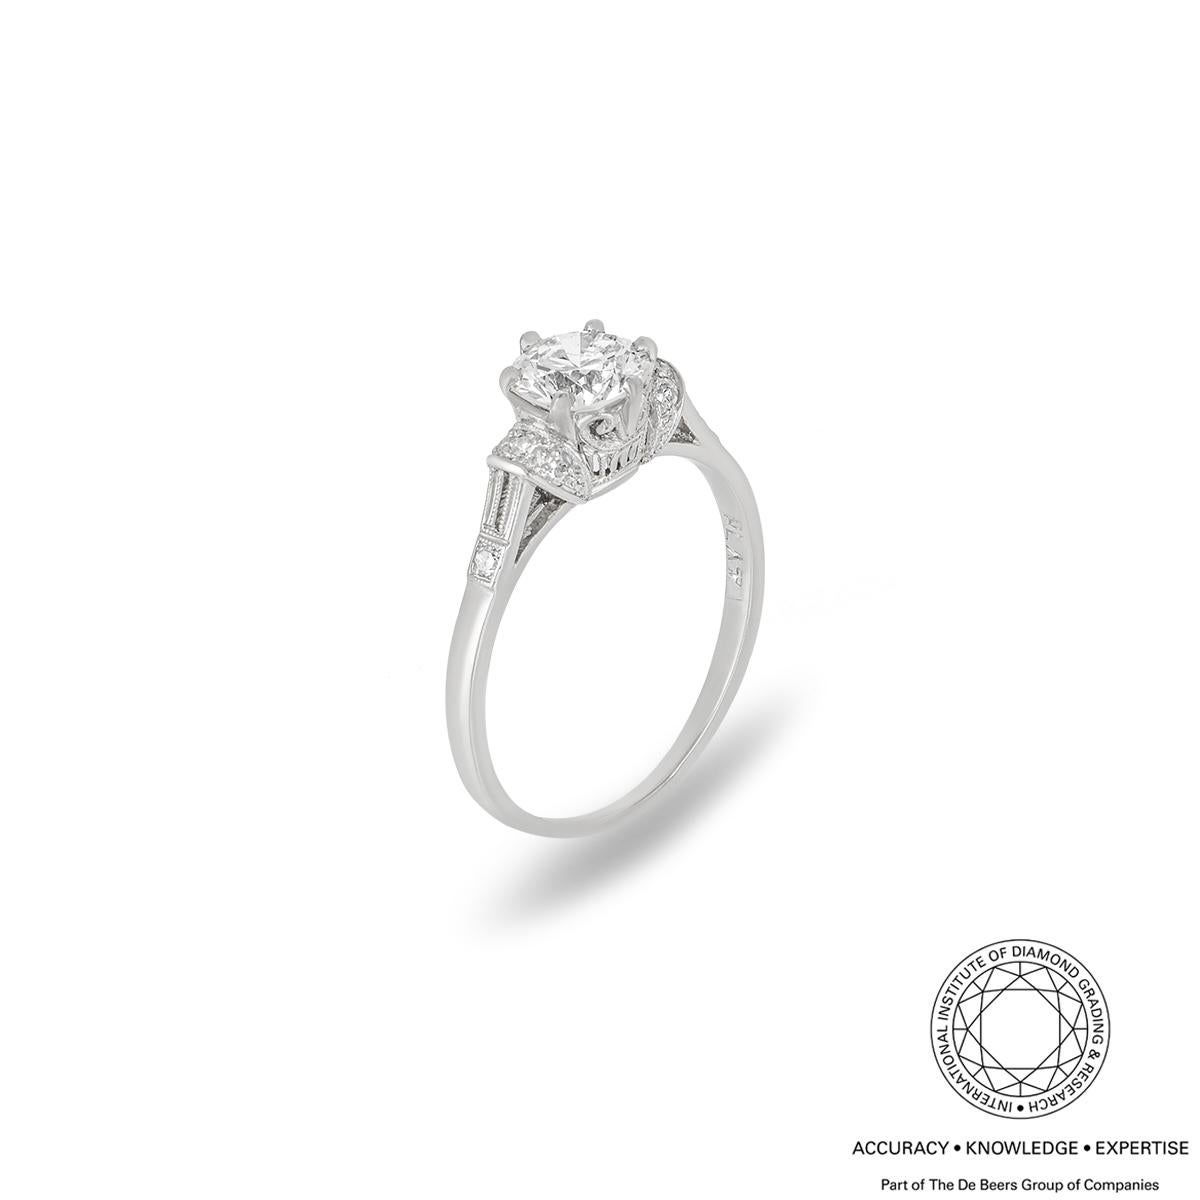 Ein wunderschöner Verlobungsring mit Diamanten aus Platin. Der Ring besteht aus einem altgeschliffenen Diamanten mit einem Gesamtgewicht von 0,88 ct, Farbe M und Reinheit VS1 und hat 8 runde Diamanten im Brillantschliff wie ein Vintage-Stil auf der